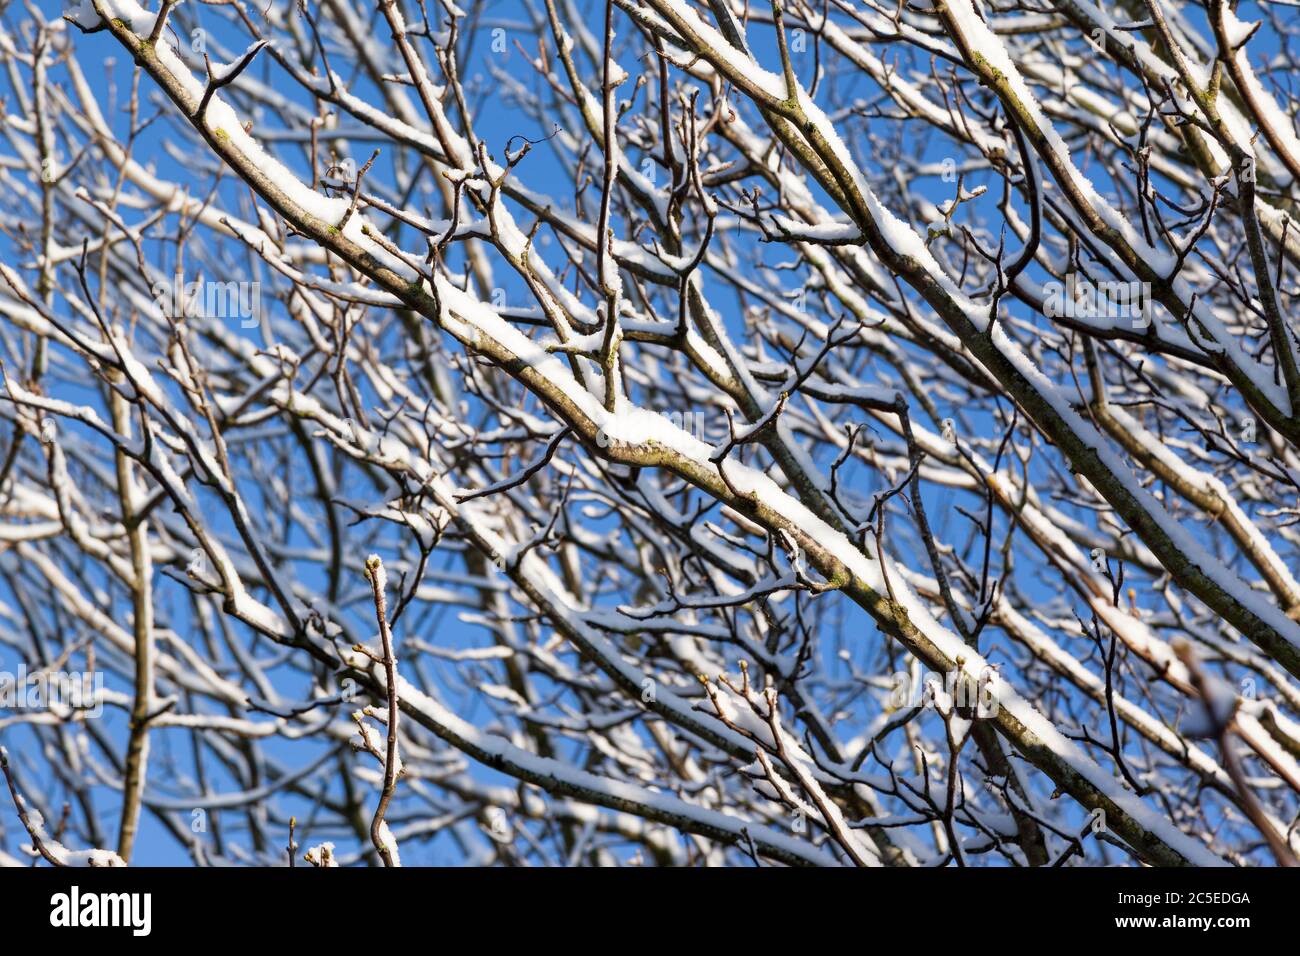 Gros plan de branches d'arbres recouvertes de neige avec un fond bleu ciel. Mise au point sélective sur les branches au premier plan. Banque D'Images